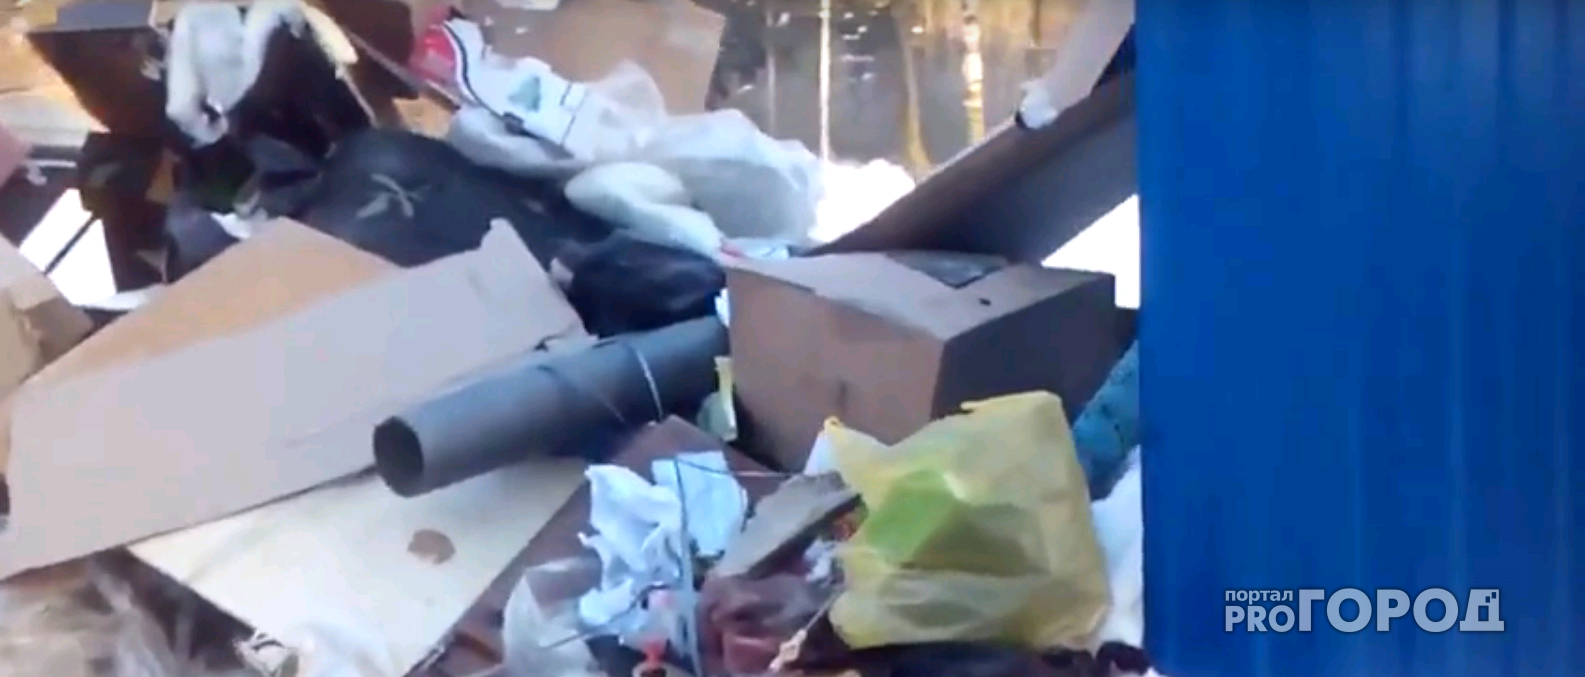 На Сосновой жители выкидывают мусор у контейнера, который закрыт на замок